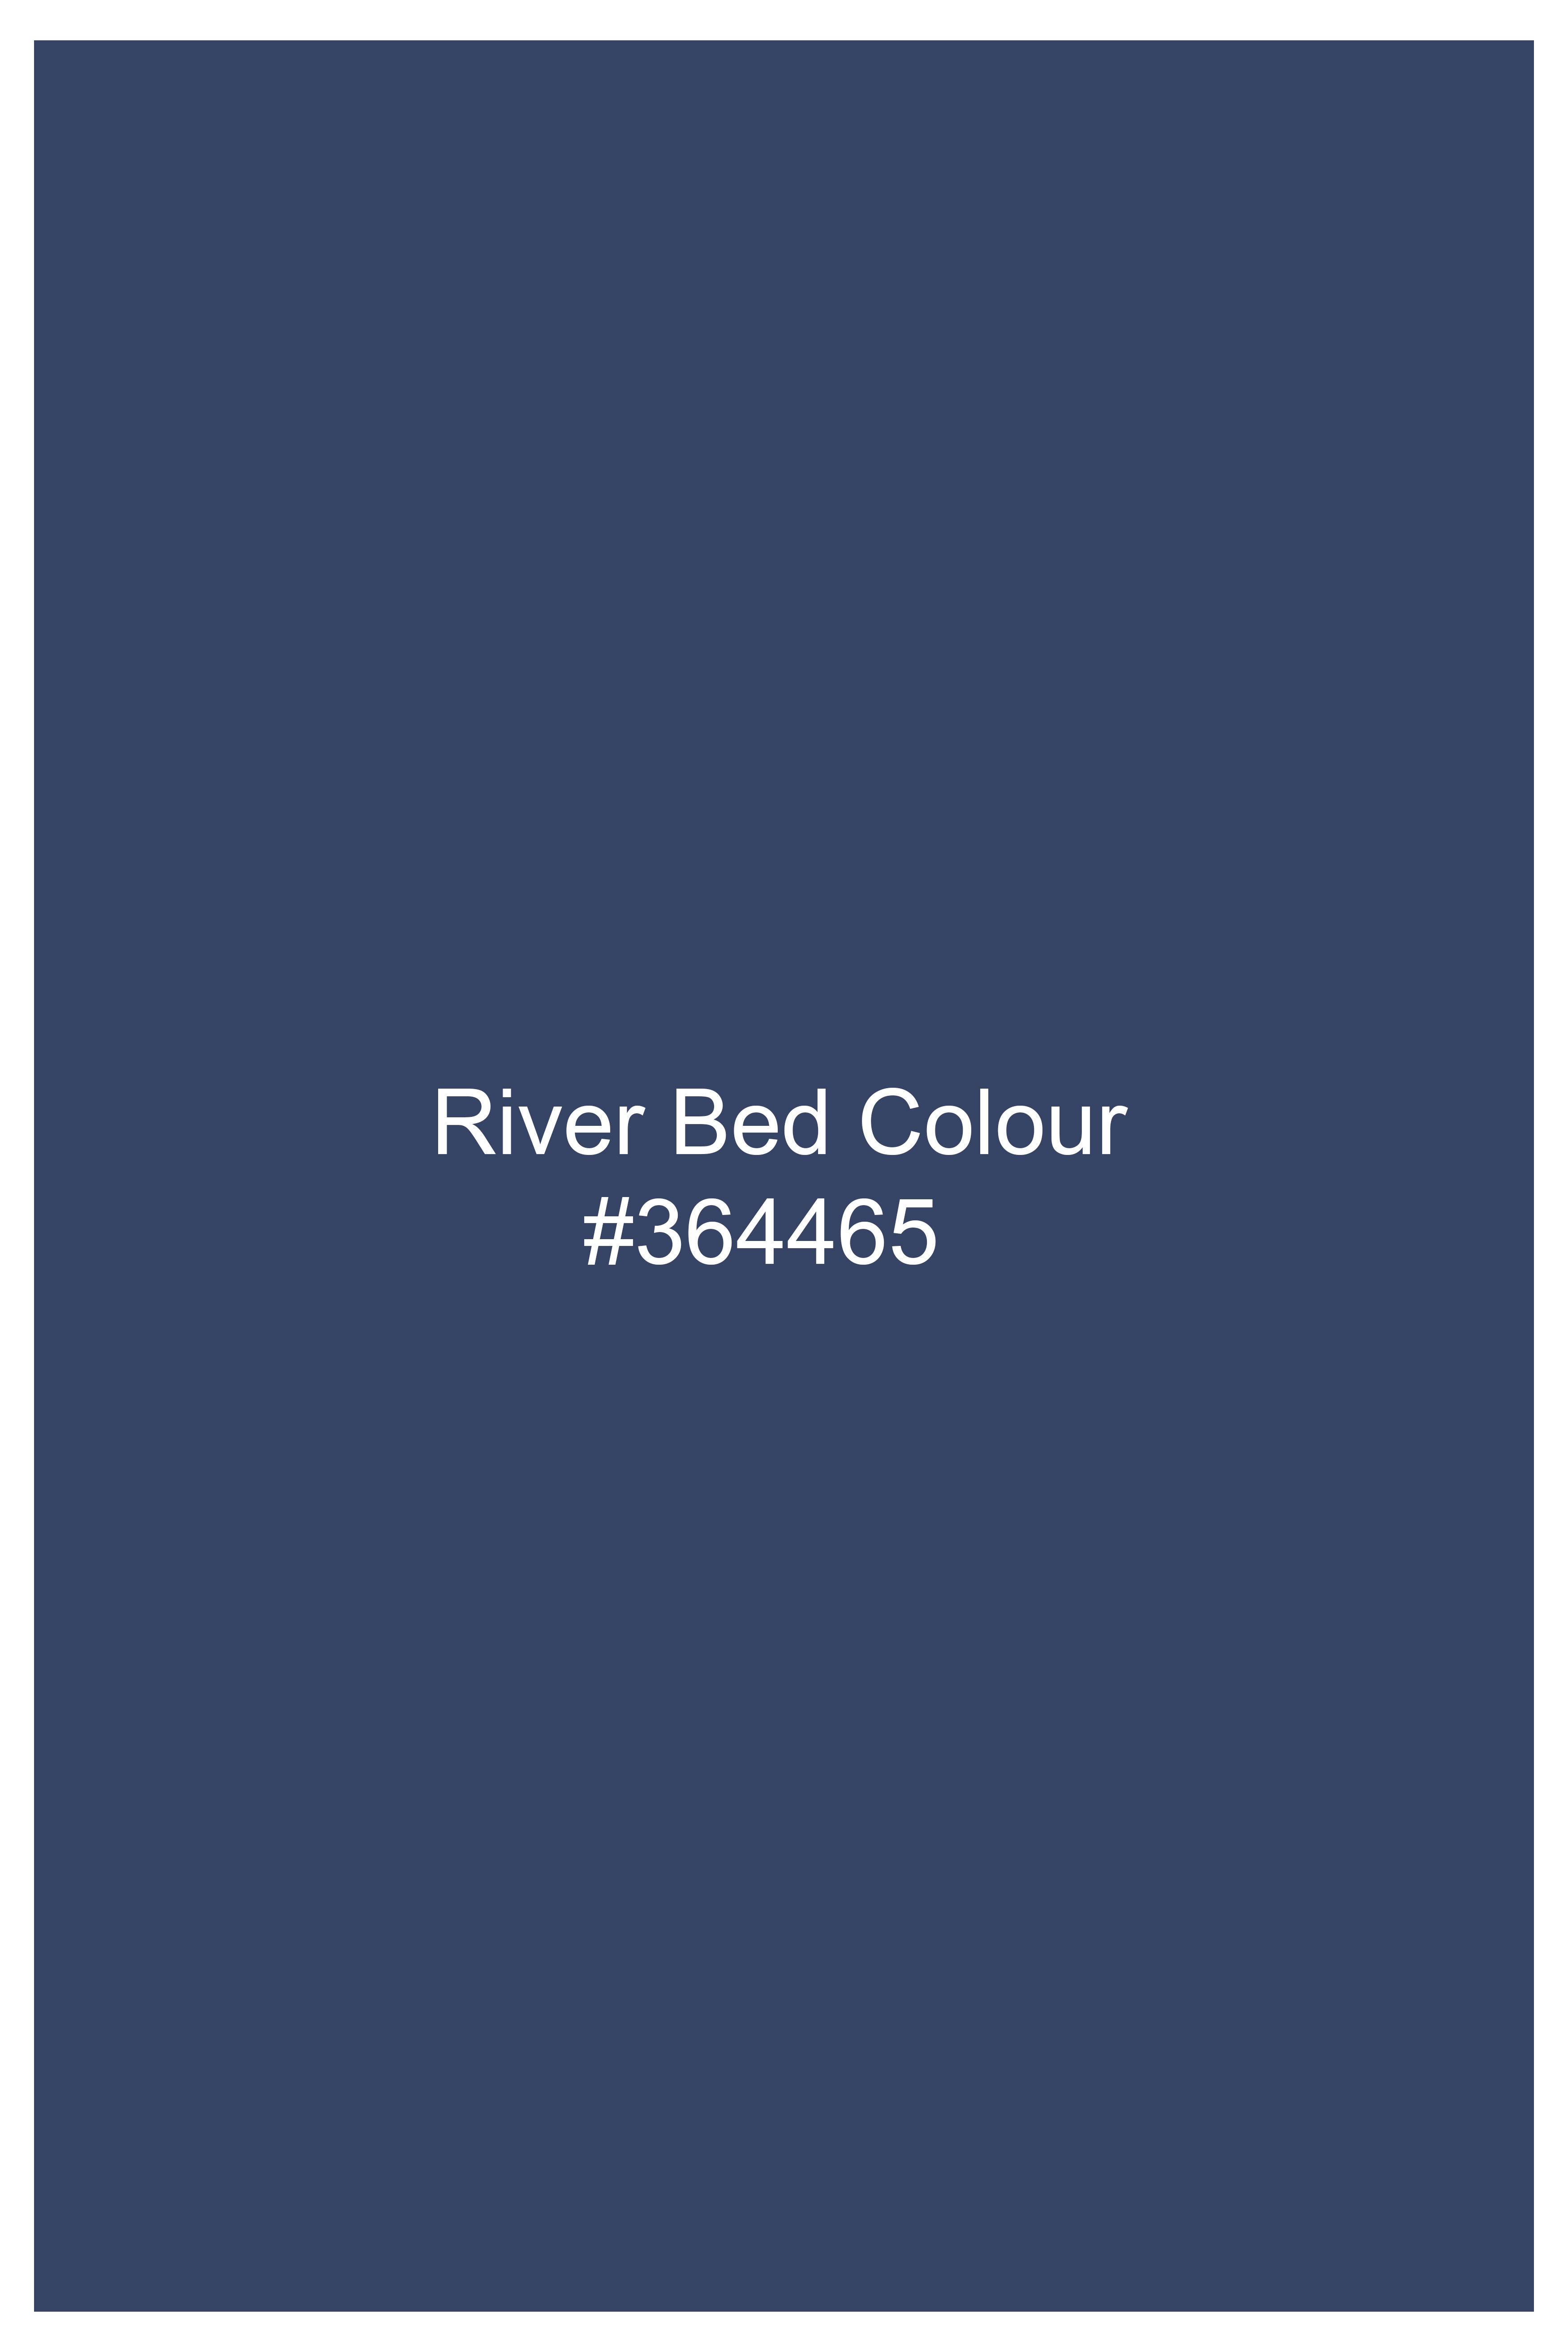 River Bed Blue Acid Wash Cargo Denim J269-30, J269-32, J269-34, J269-36, J269-38, J269-40